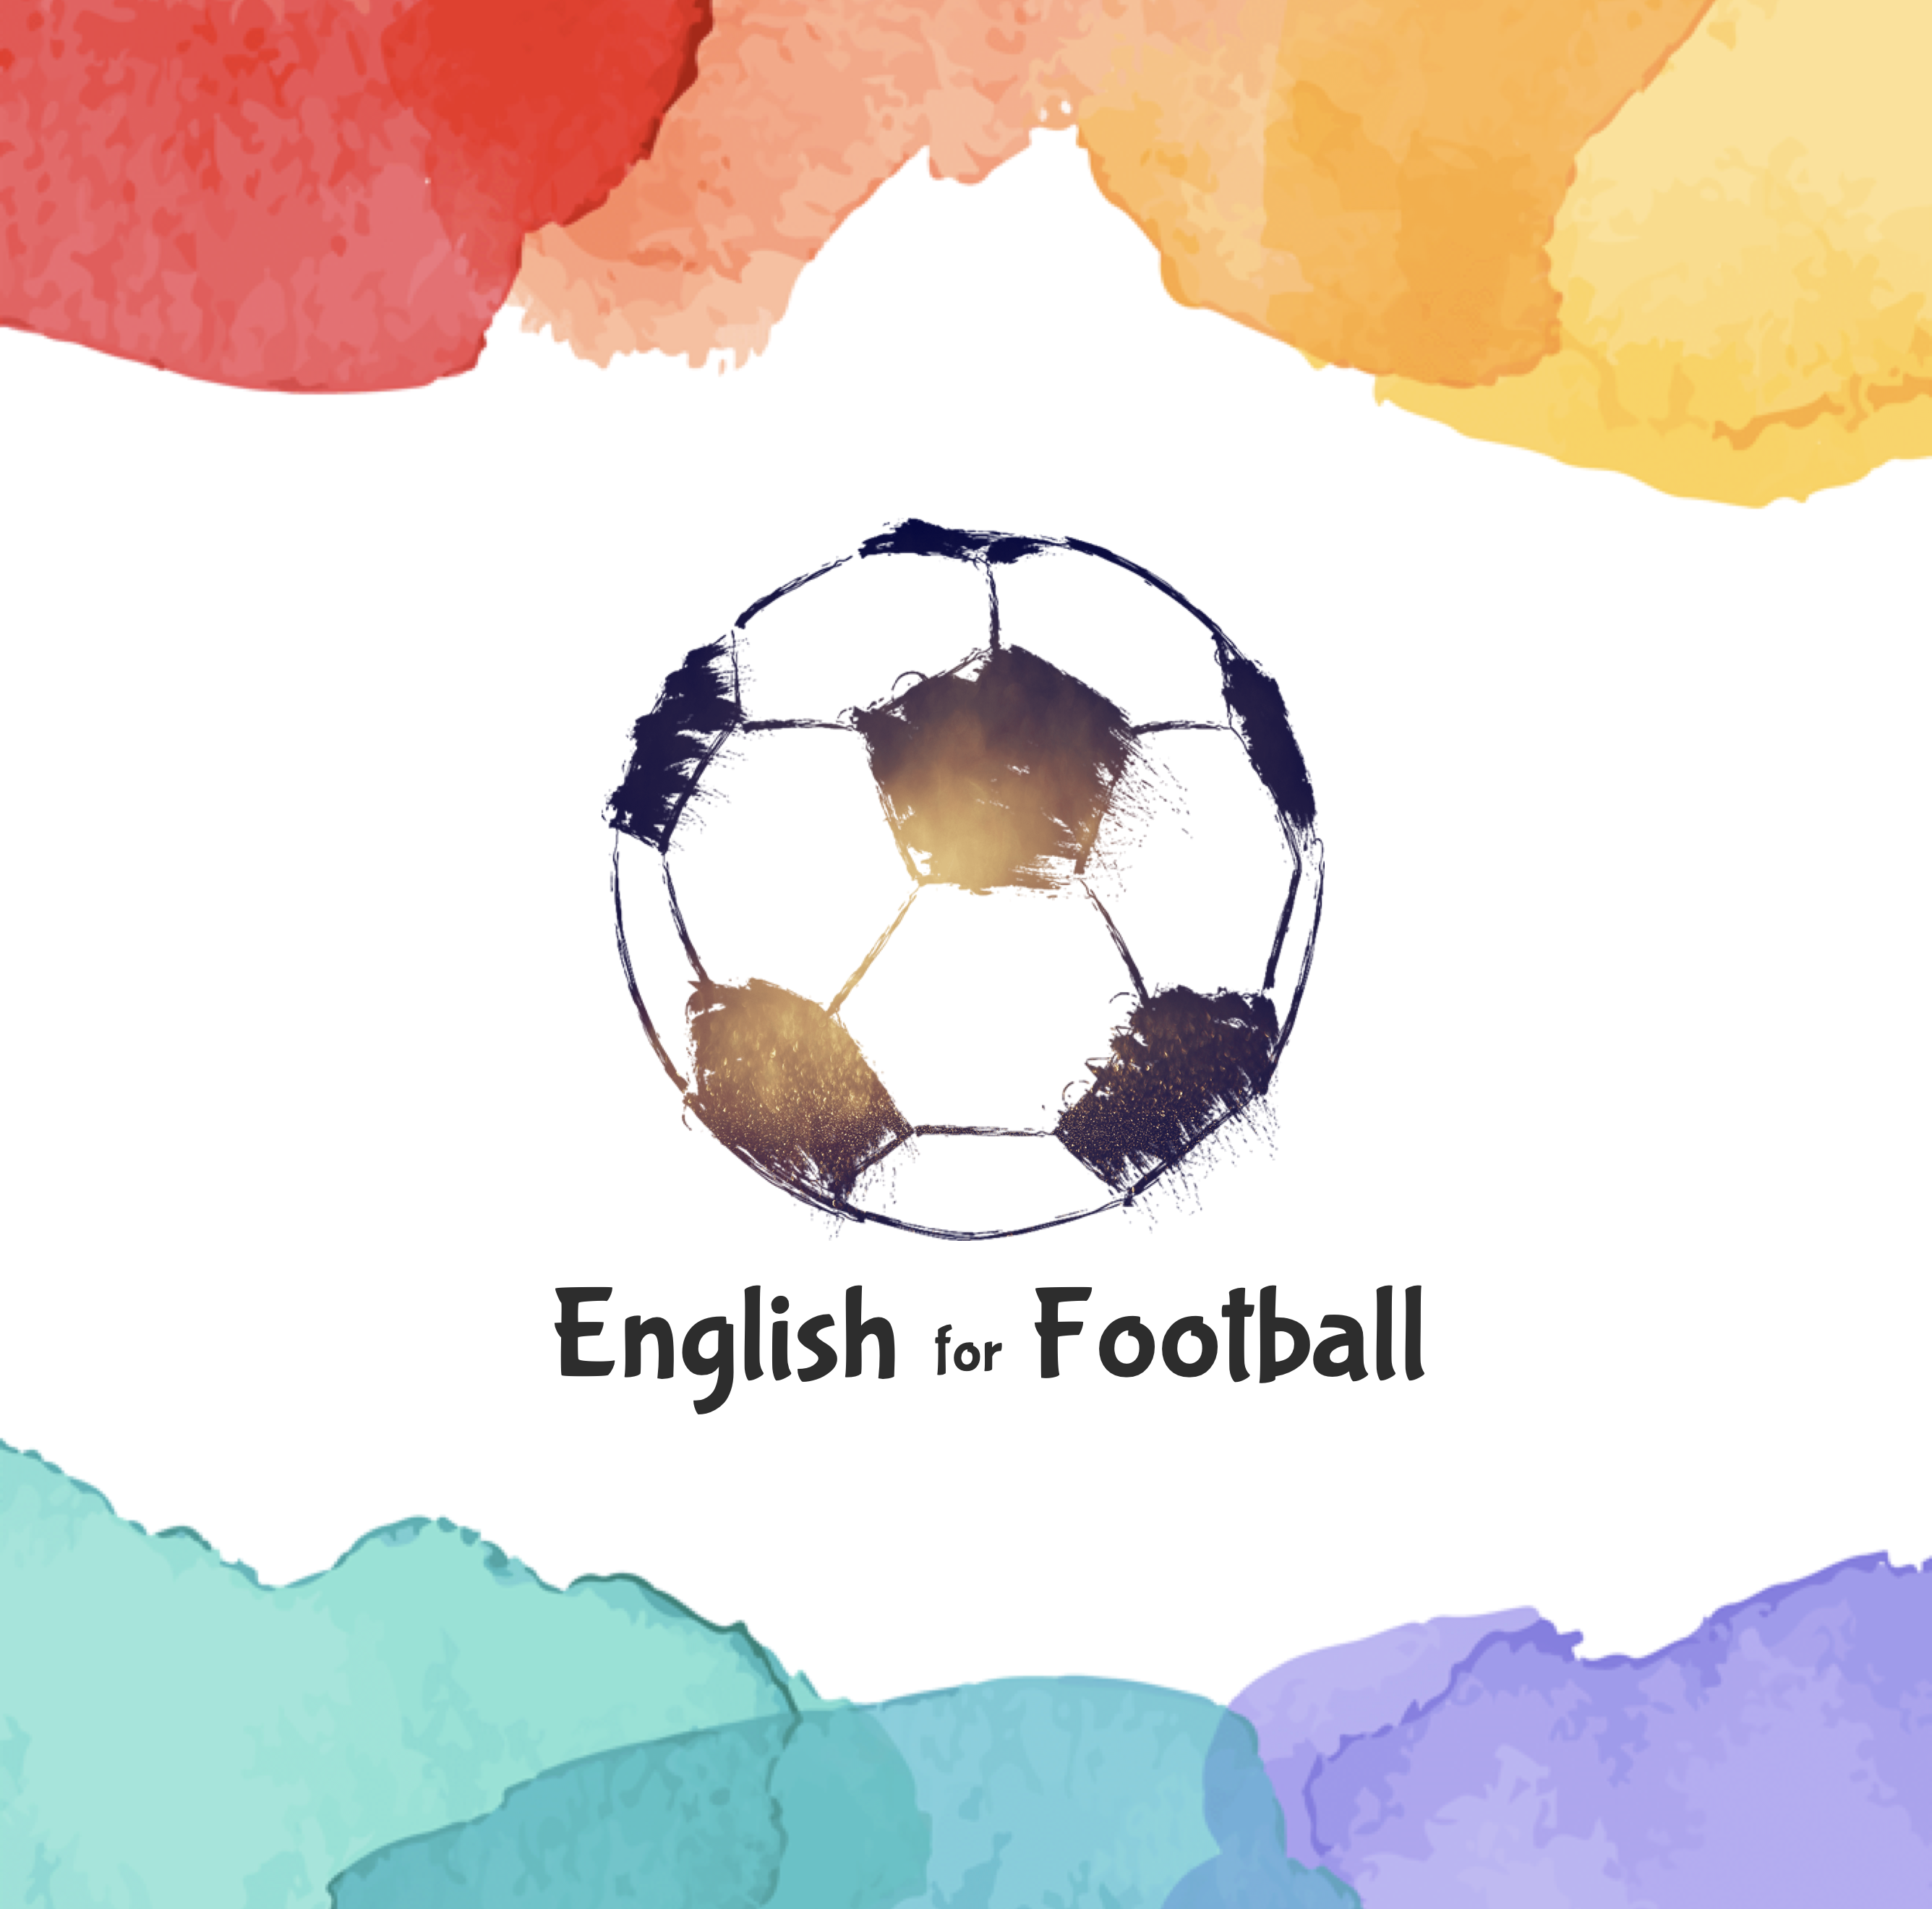 サッカーの用具 備品に関する英語ボキャブラリー50 サッカー英語 English For Football